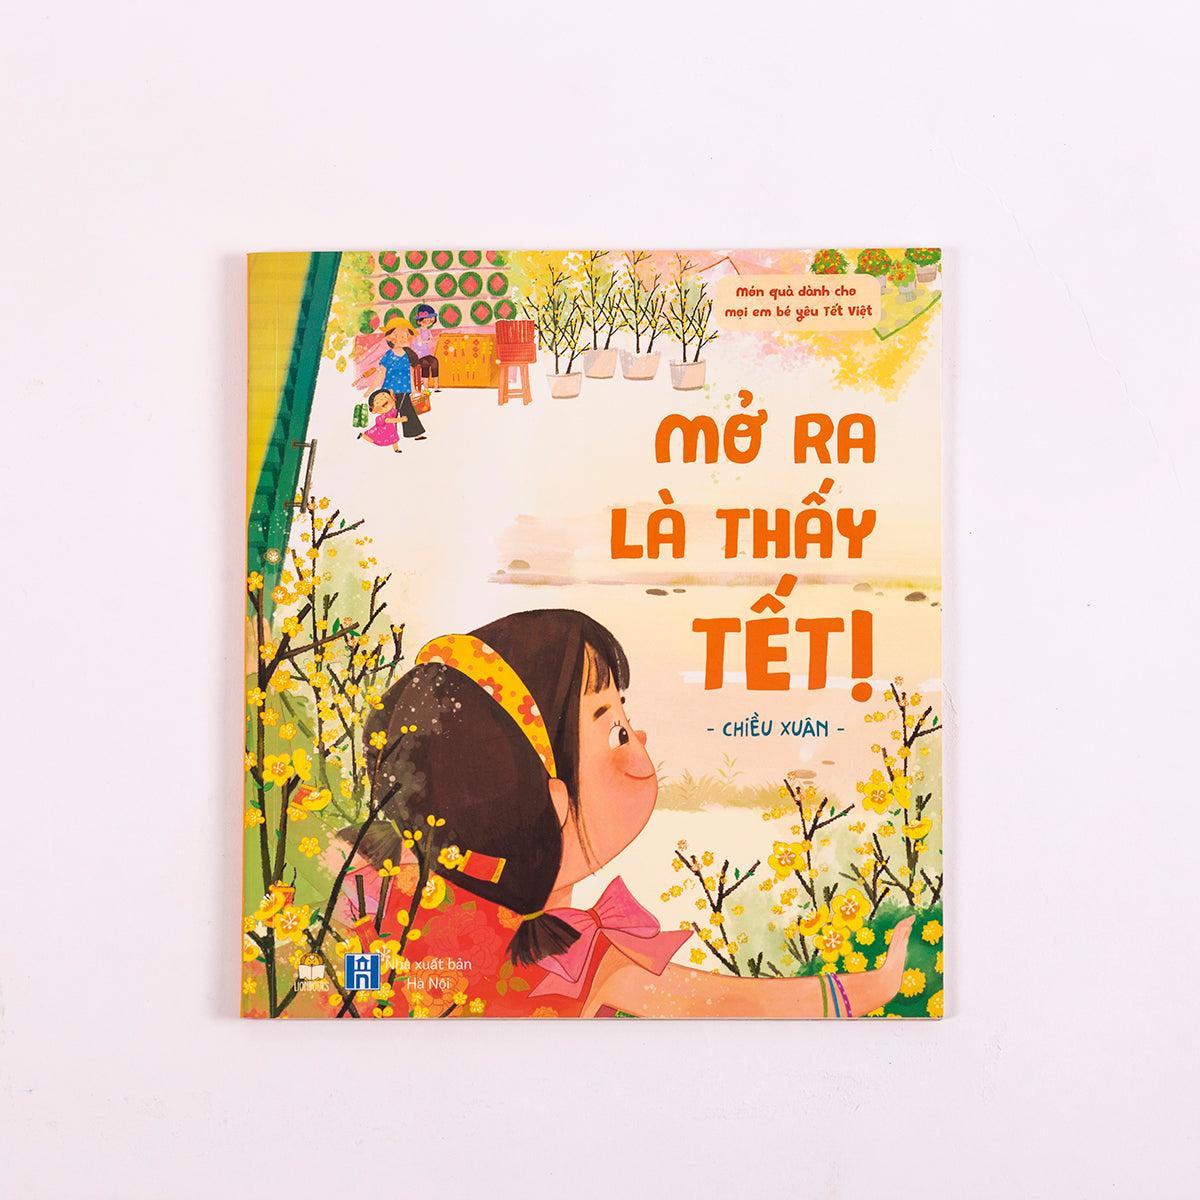 Set Mở ra là thấy Tết (phiên bản miền Nam) | Bilingual set: Open to See Tết (SouthVietnam)